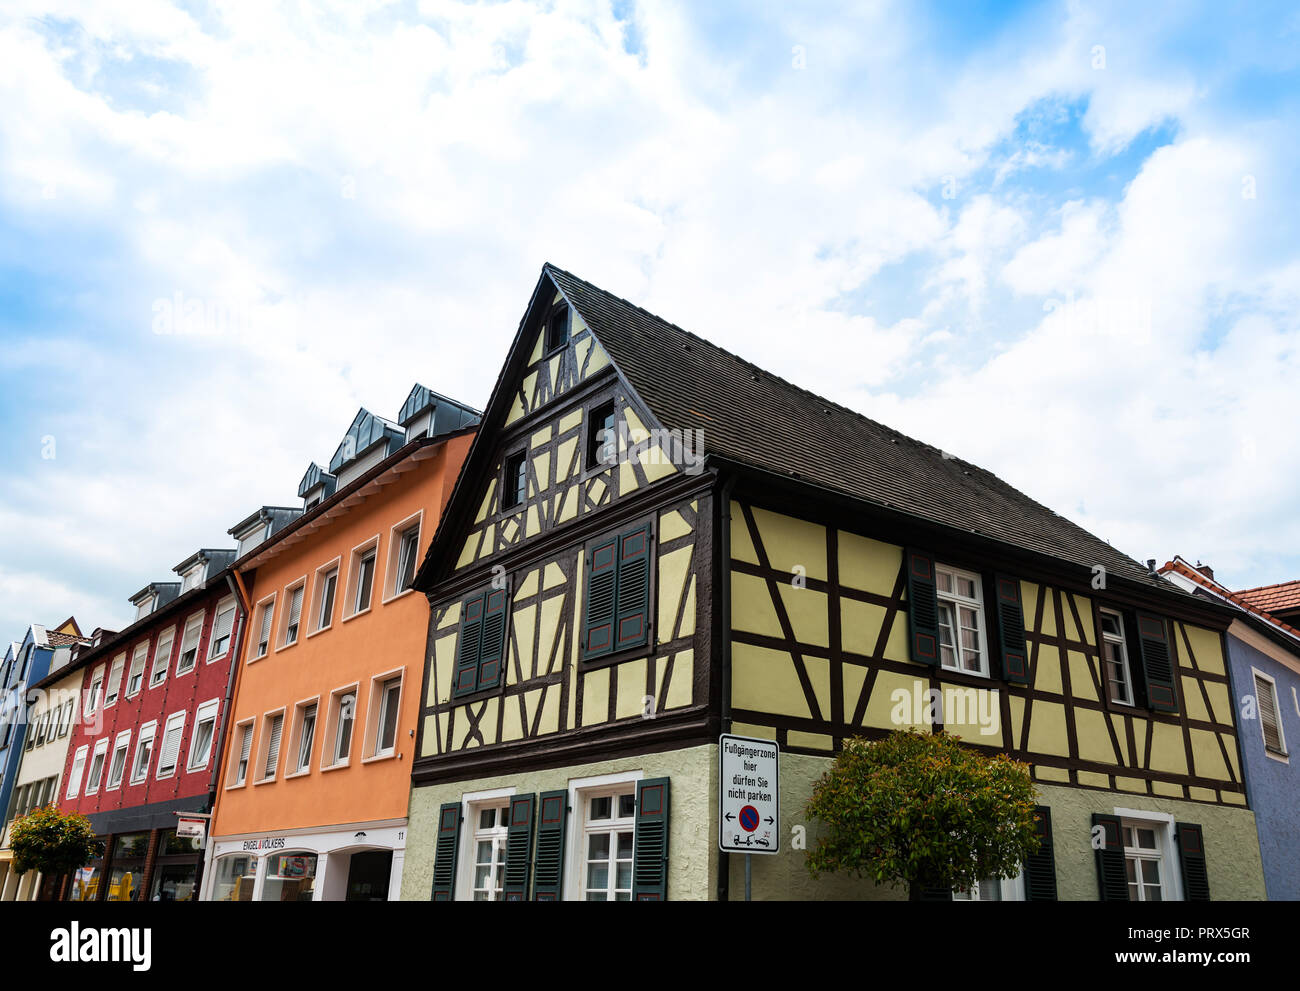 OFFENBURG, ALLEMAGNE - 19 juin 2018 : avis de bâtiments Offenburg, Allemagne Banque D'Images